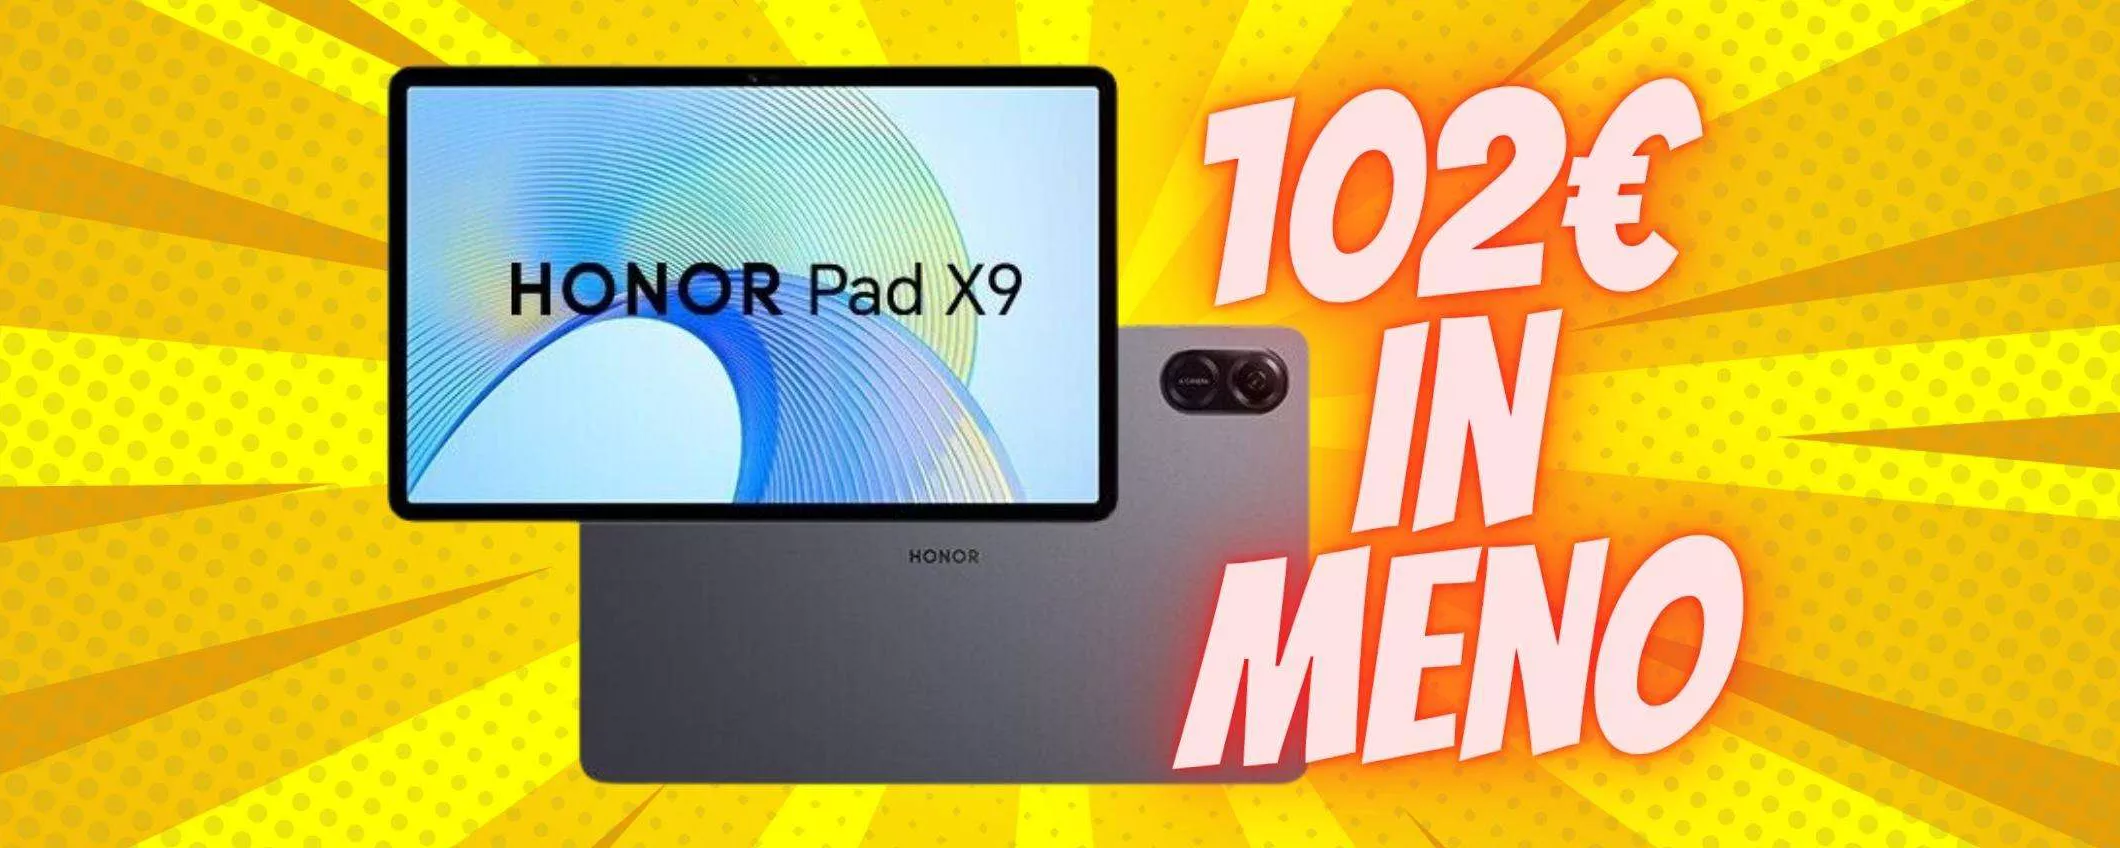 Honor Pad X9 da 128GB: tablet SUPER a prezzo REGALO (-102€)